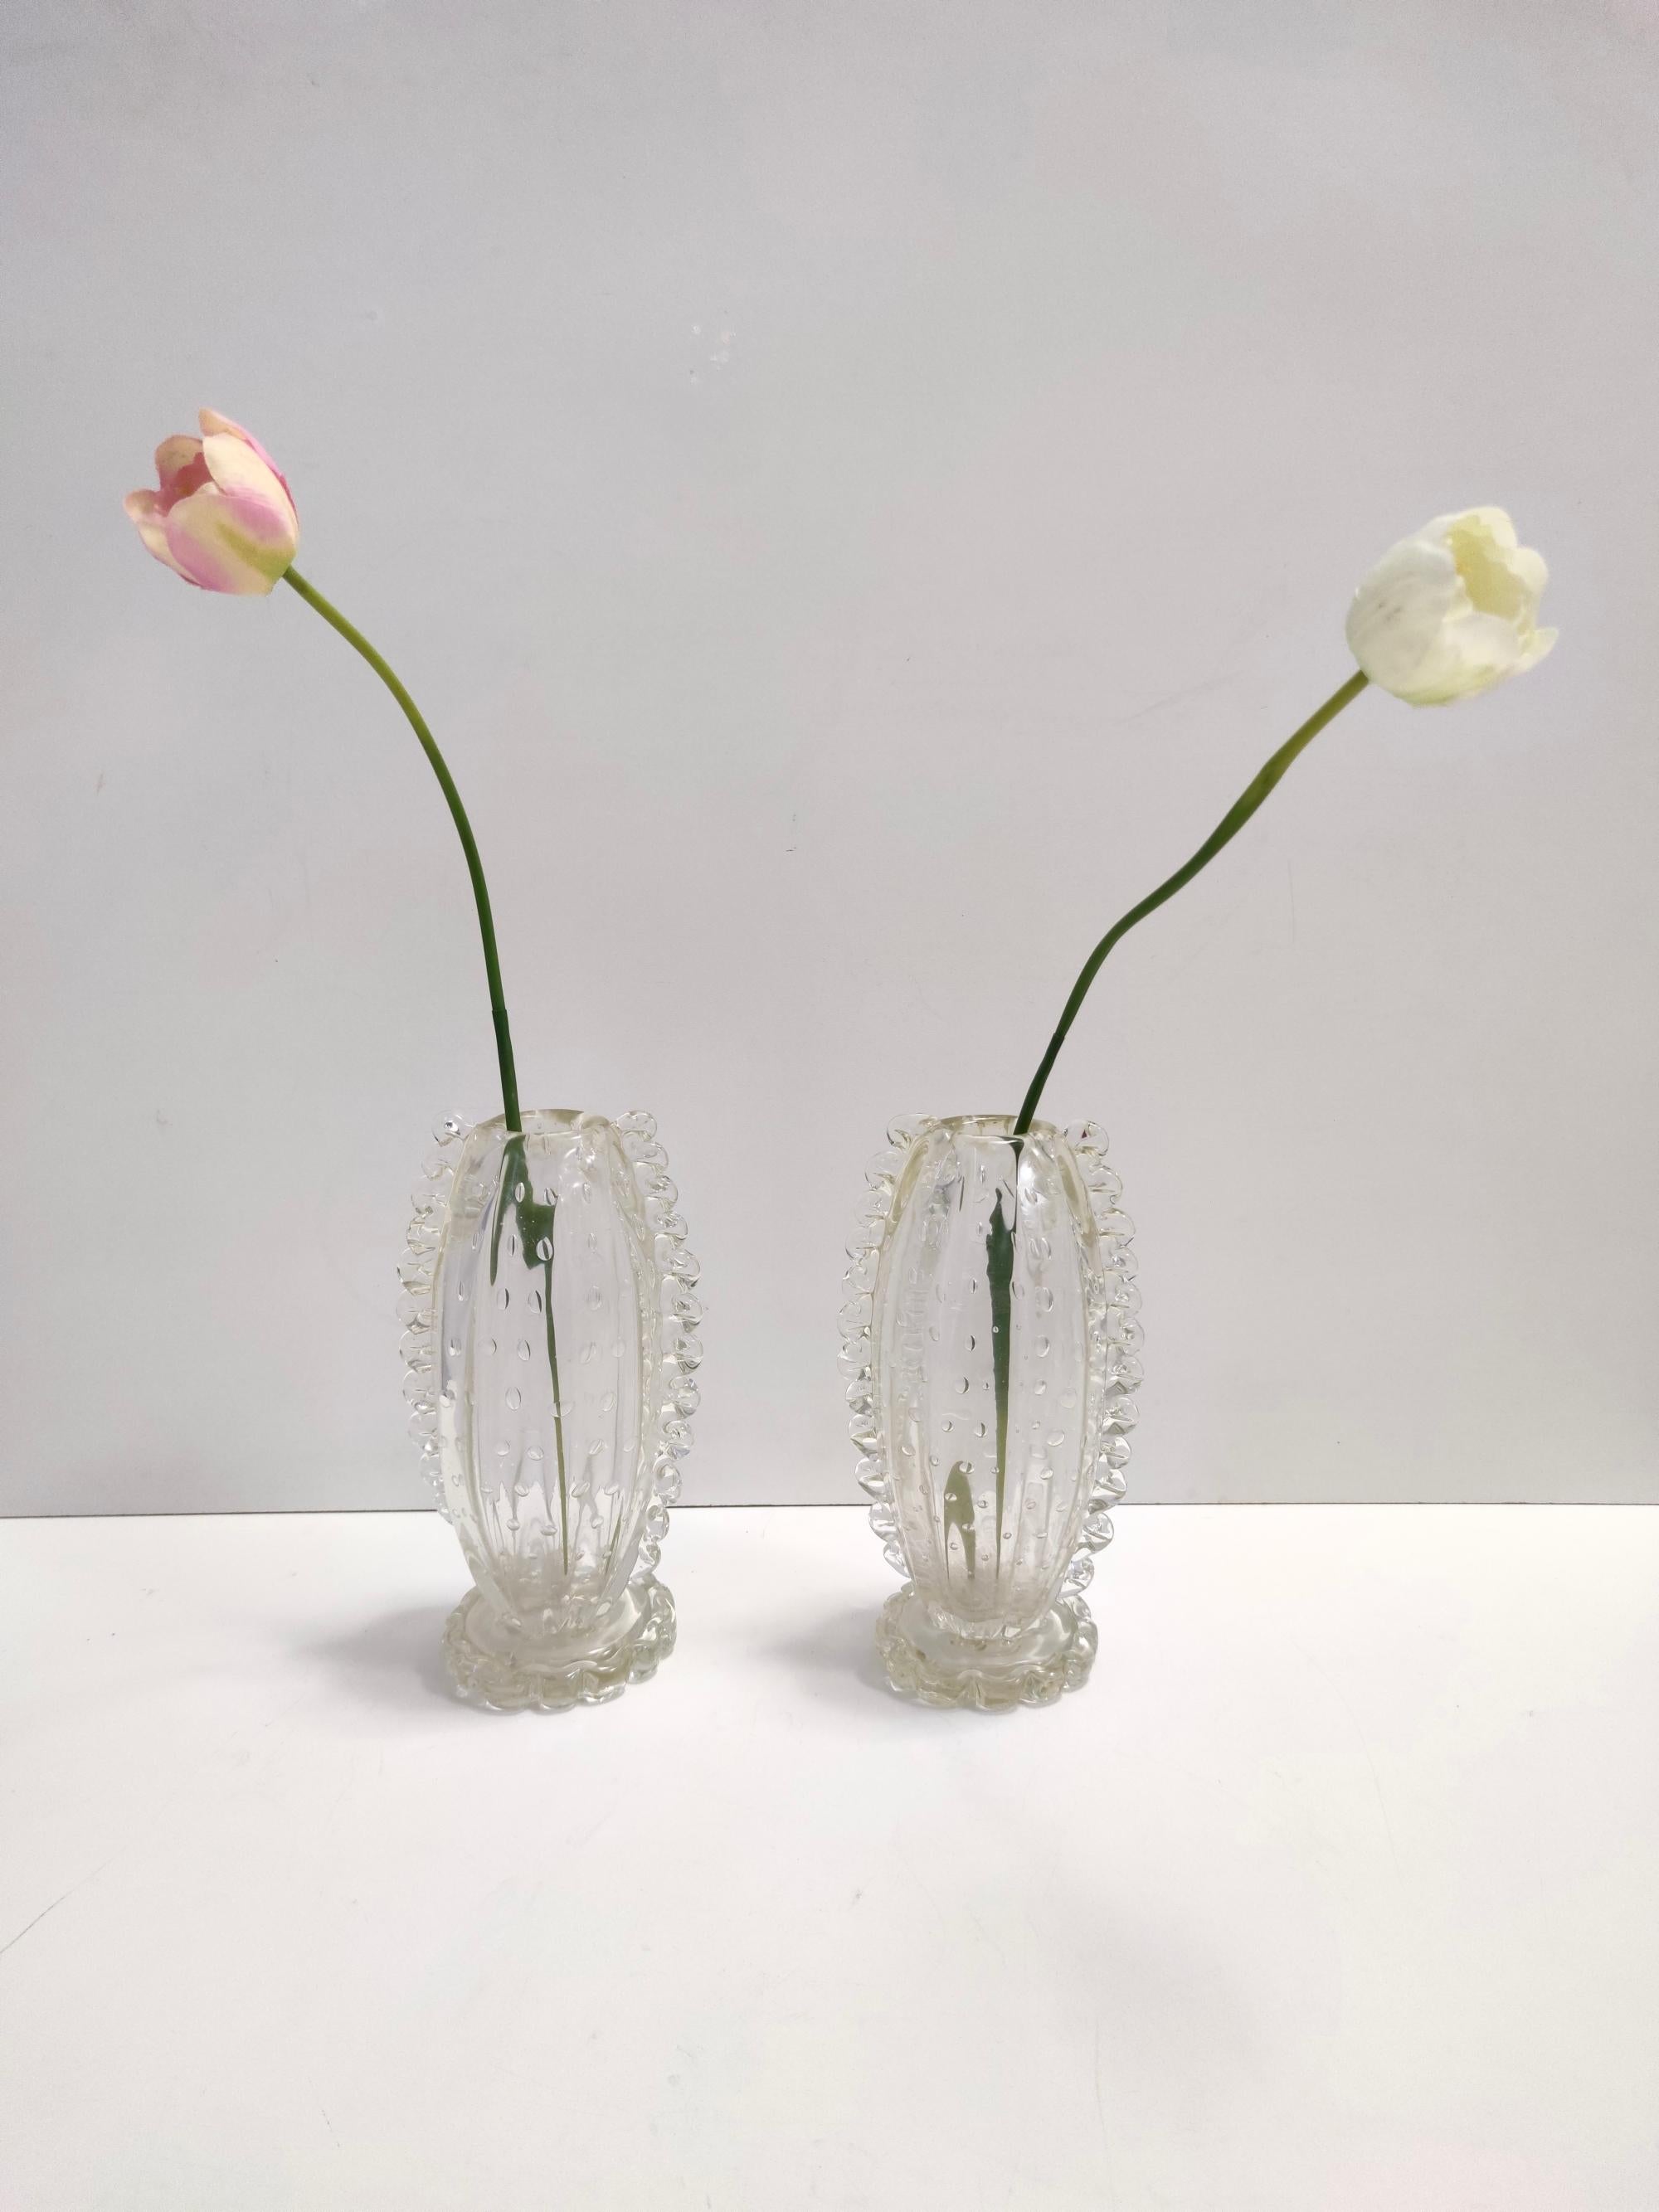 Fabriqué en Italie, années 1930 - 1940
Réalisé en verre transparent bullicante de Murano soufflé à la bouche par Ercol Barovier. 
Ces vases sont originaux et assez rares à trouver en paire, surtout dans cet état. 
Il s'agit de pièces vintage, qui